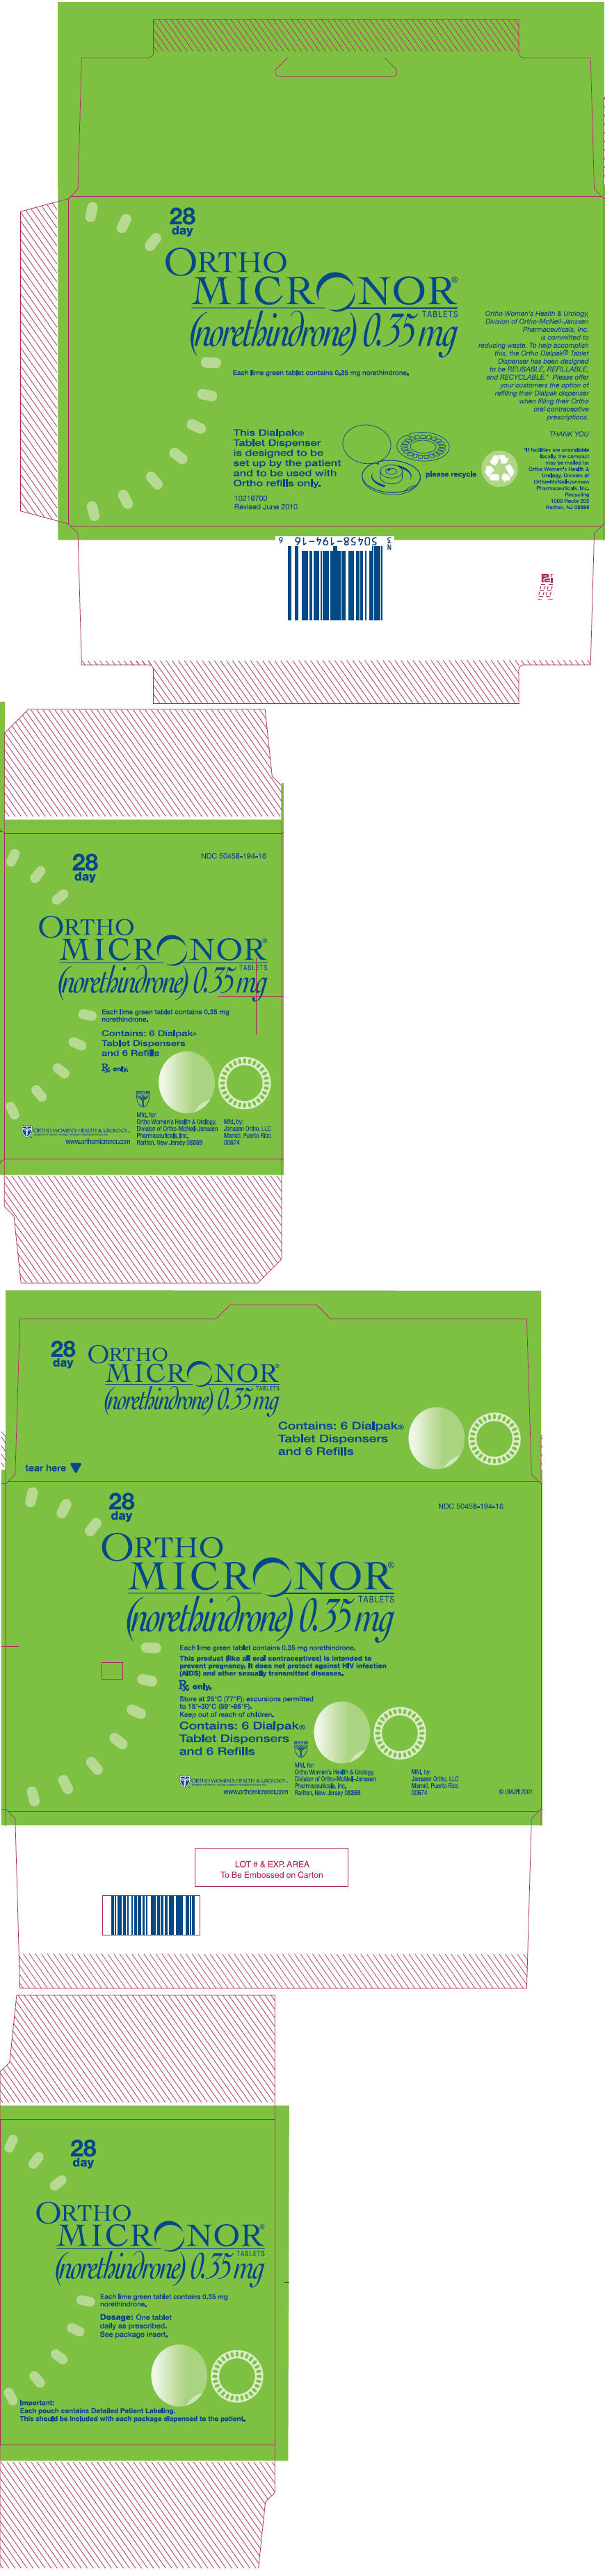 PRINCIPAL DISPLAY PANEL - 0.35 mg Tablet Carton